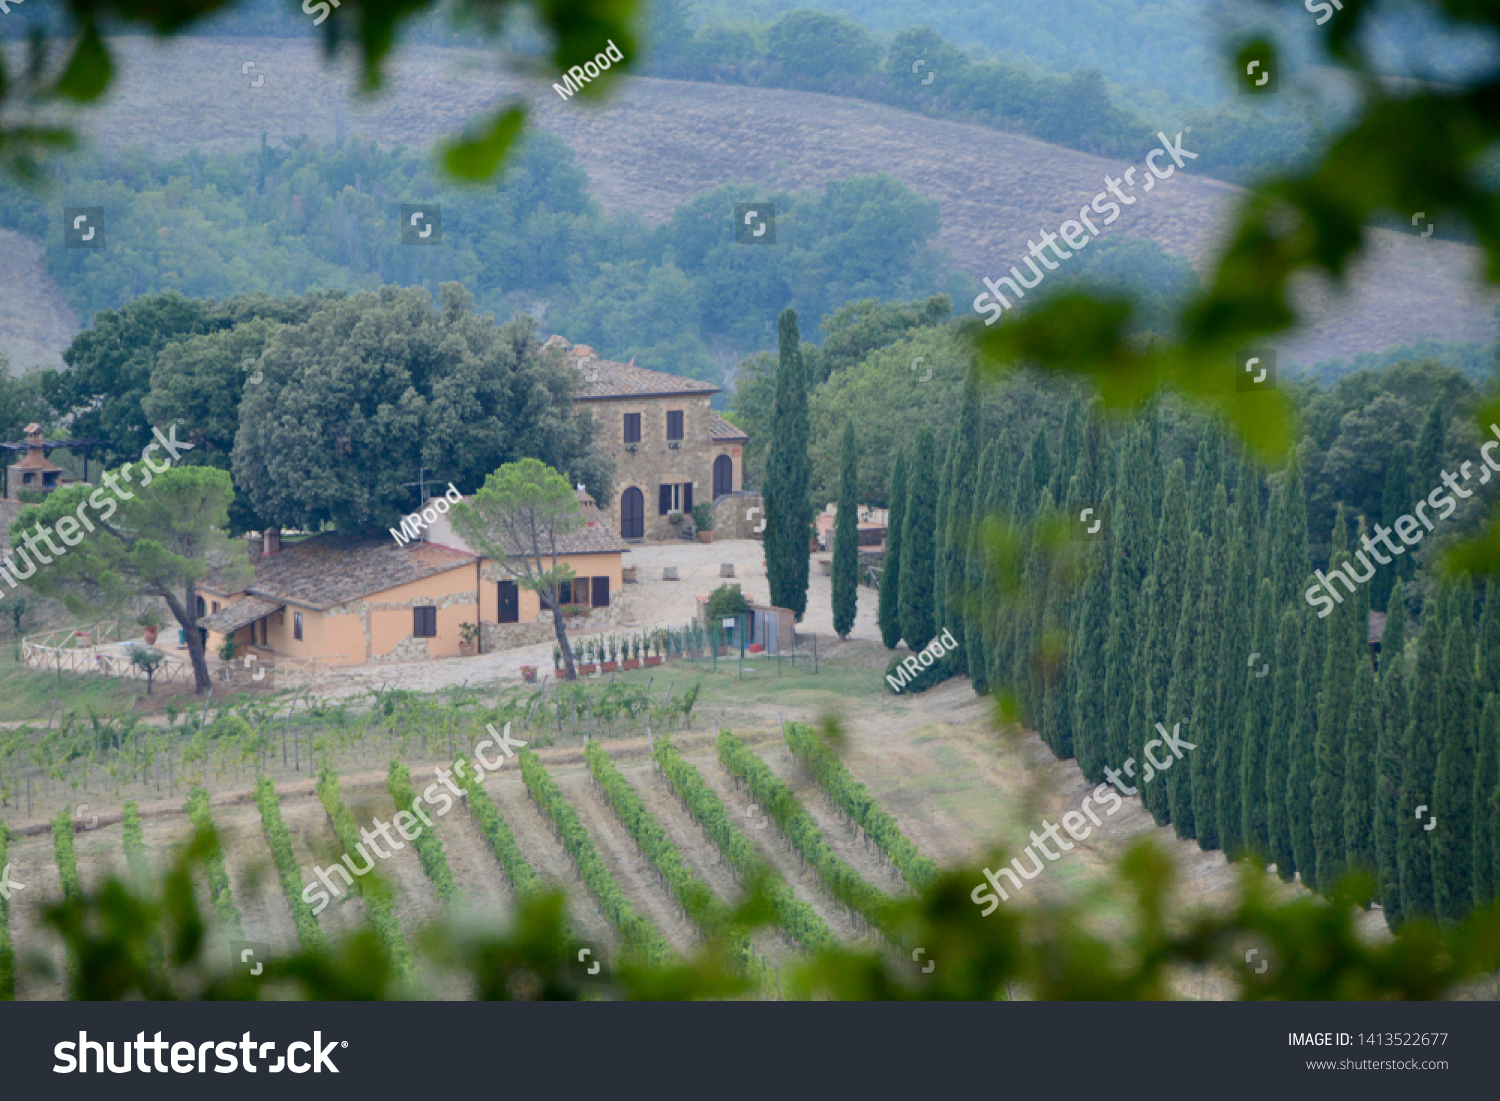 Tuscany where dreams come true #1413522677